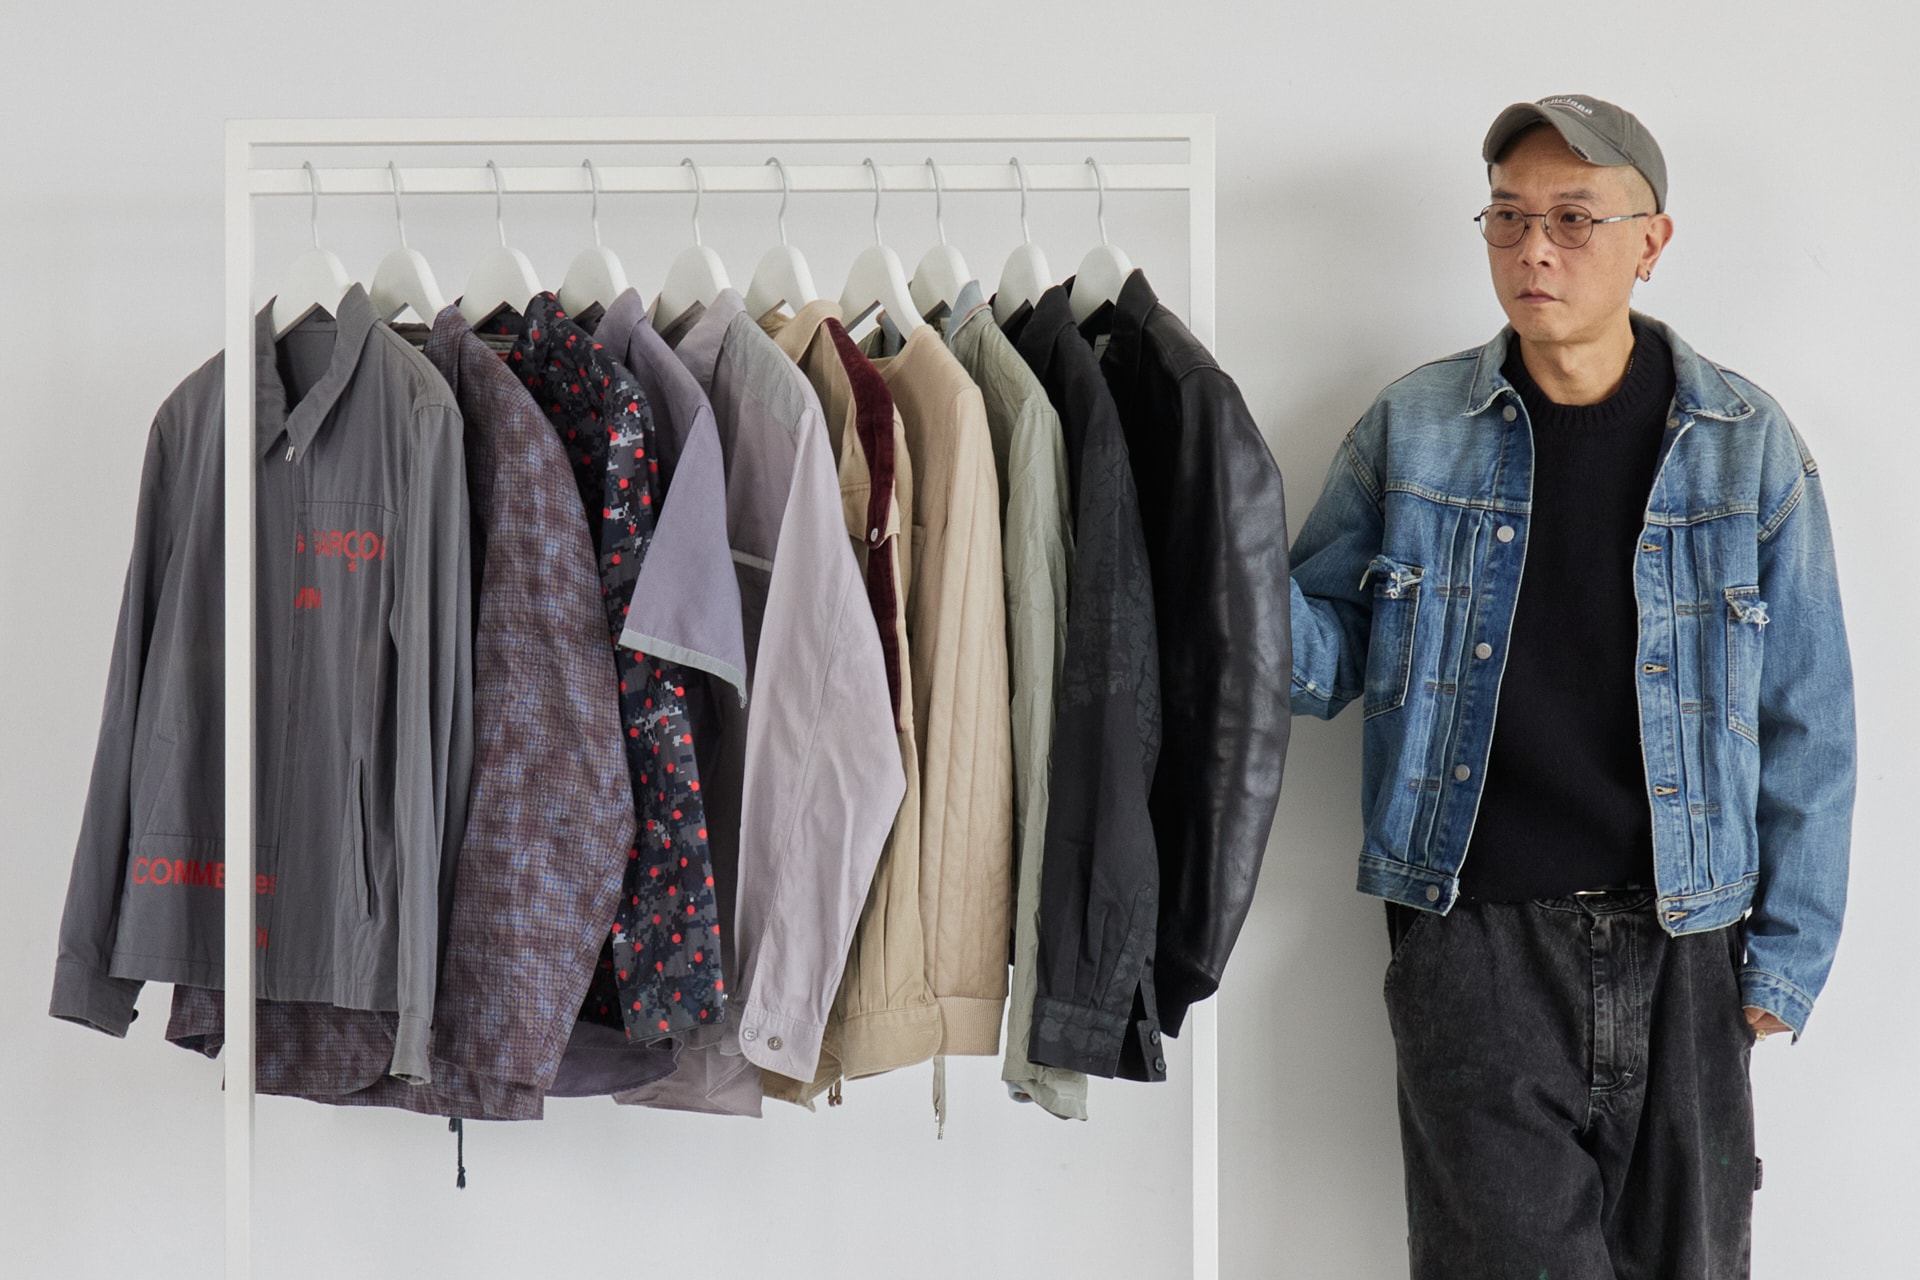 HBX 專訪時裝工作者 Wallace Kwan 並分享他的 90'S 中古逸品